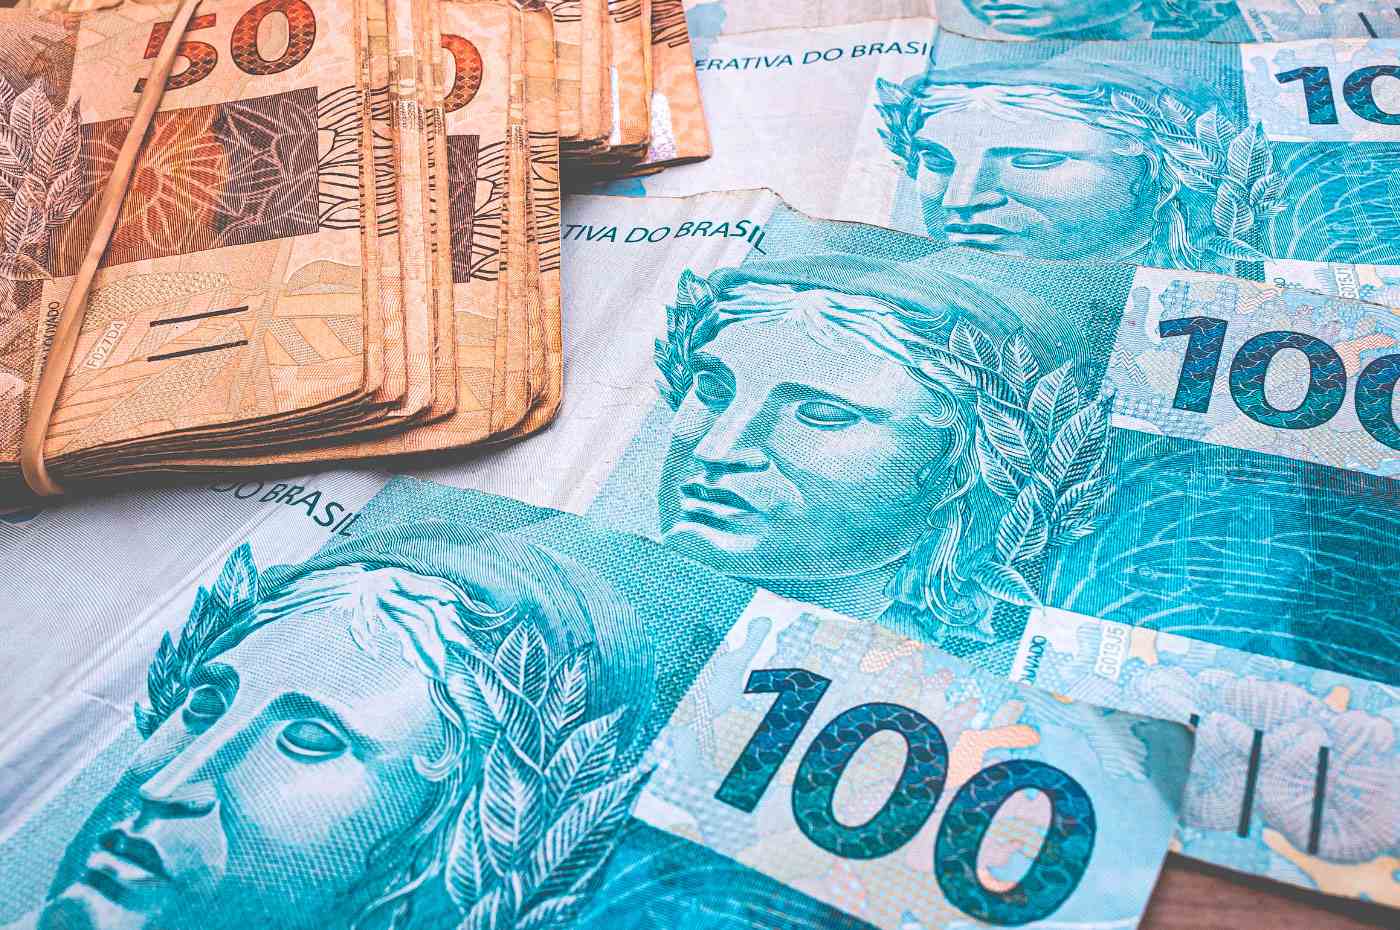 notas de dinheiro no valor de R$100,00 e R$50,00 sobre uma mesa